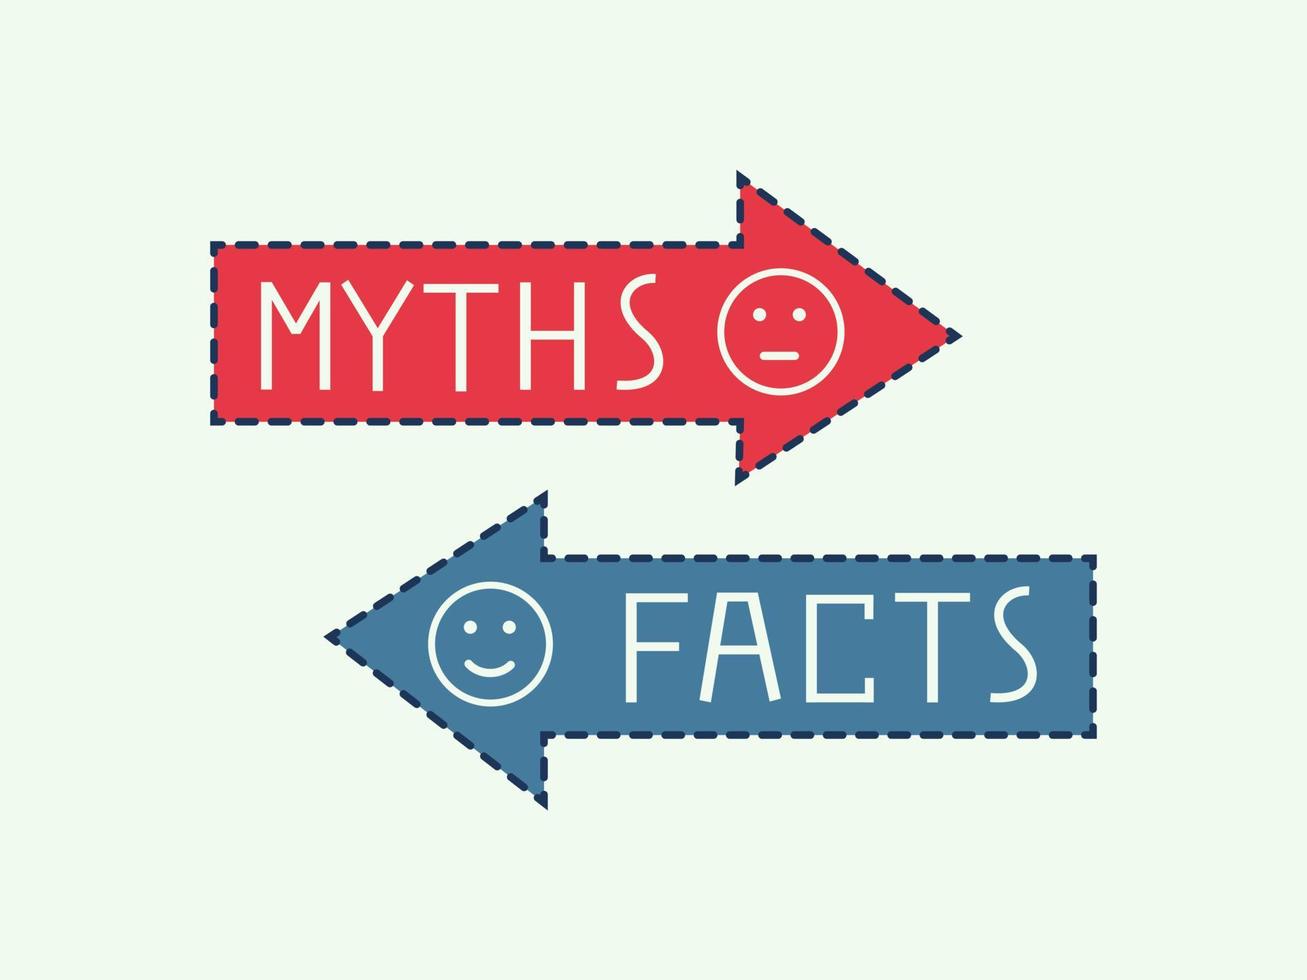 mythes vs faits icône infographique rouge et bleu. flèche de bulle de discours de vérité ou de fiction. illustration vectorielle plane vecteur